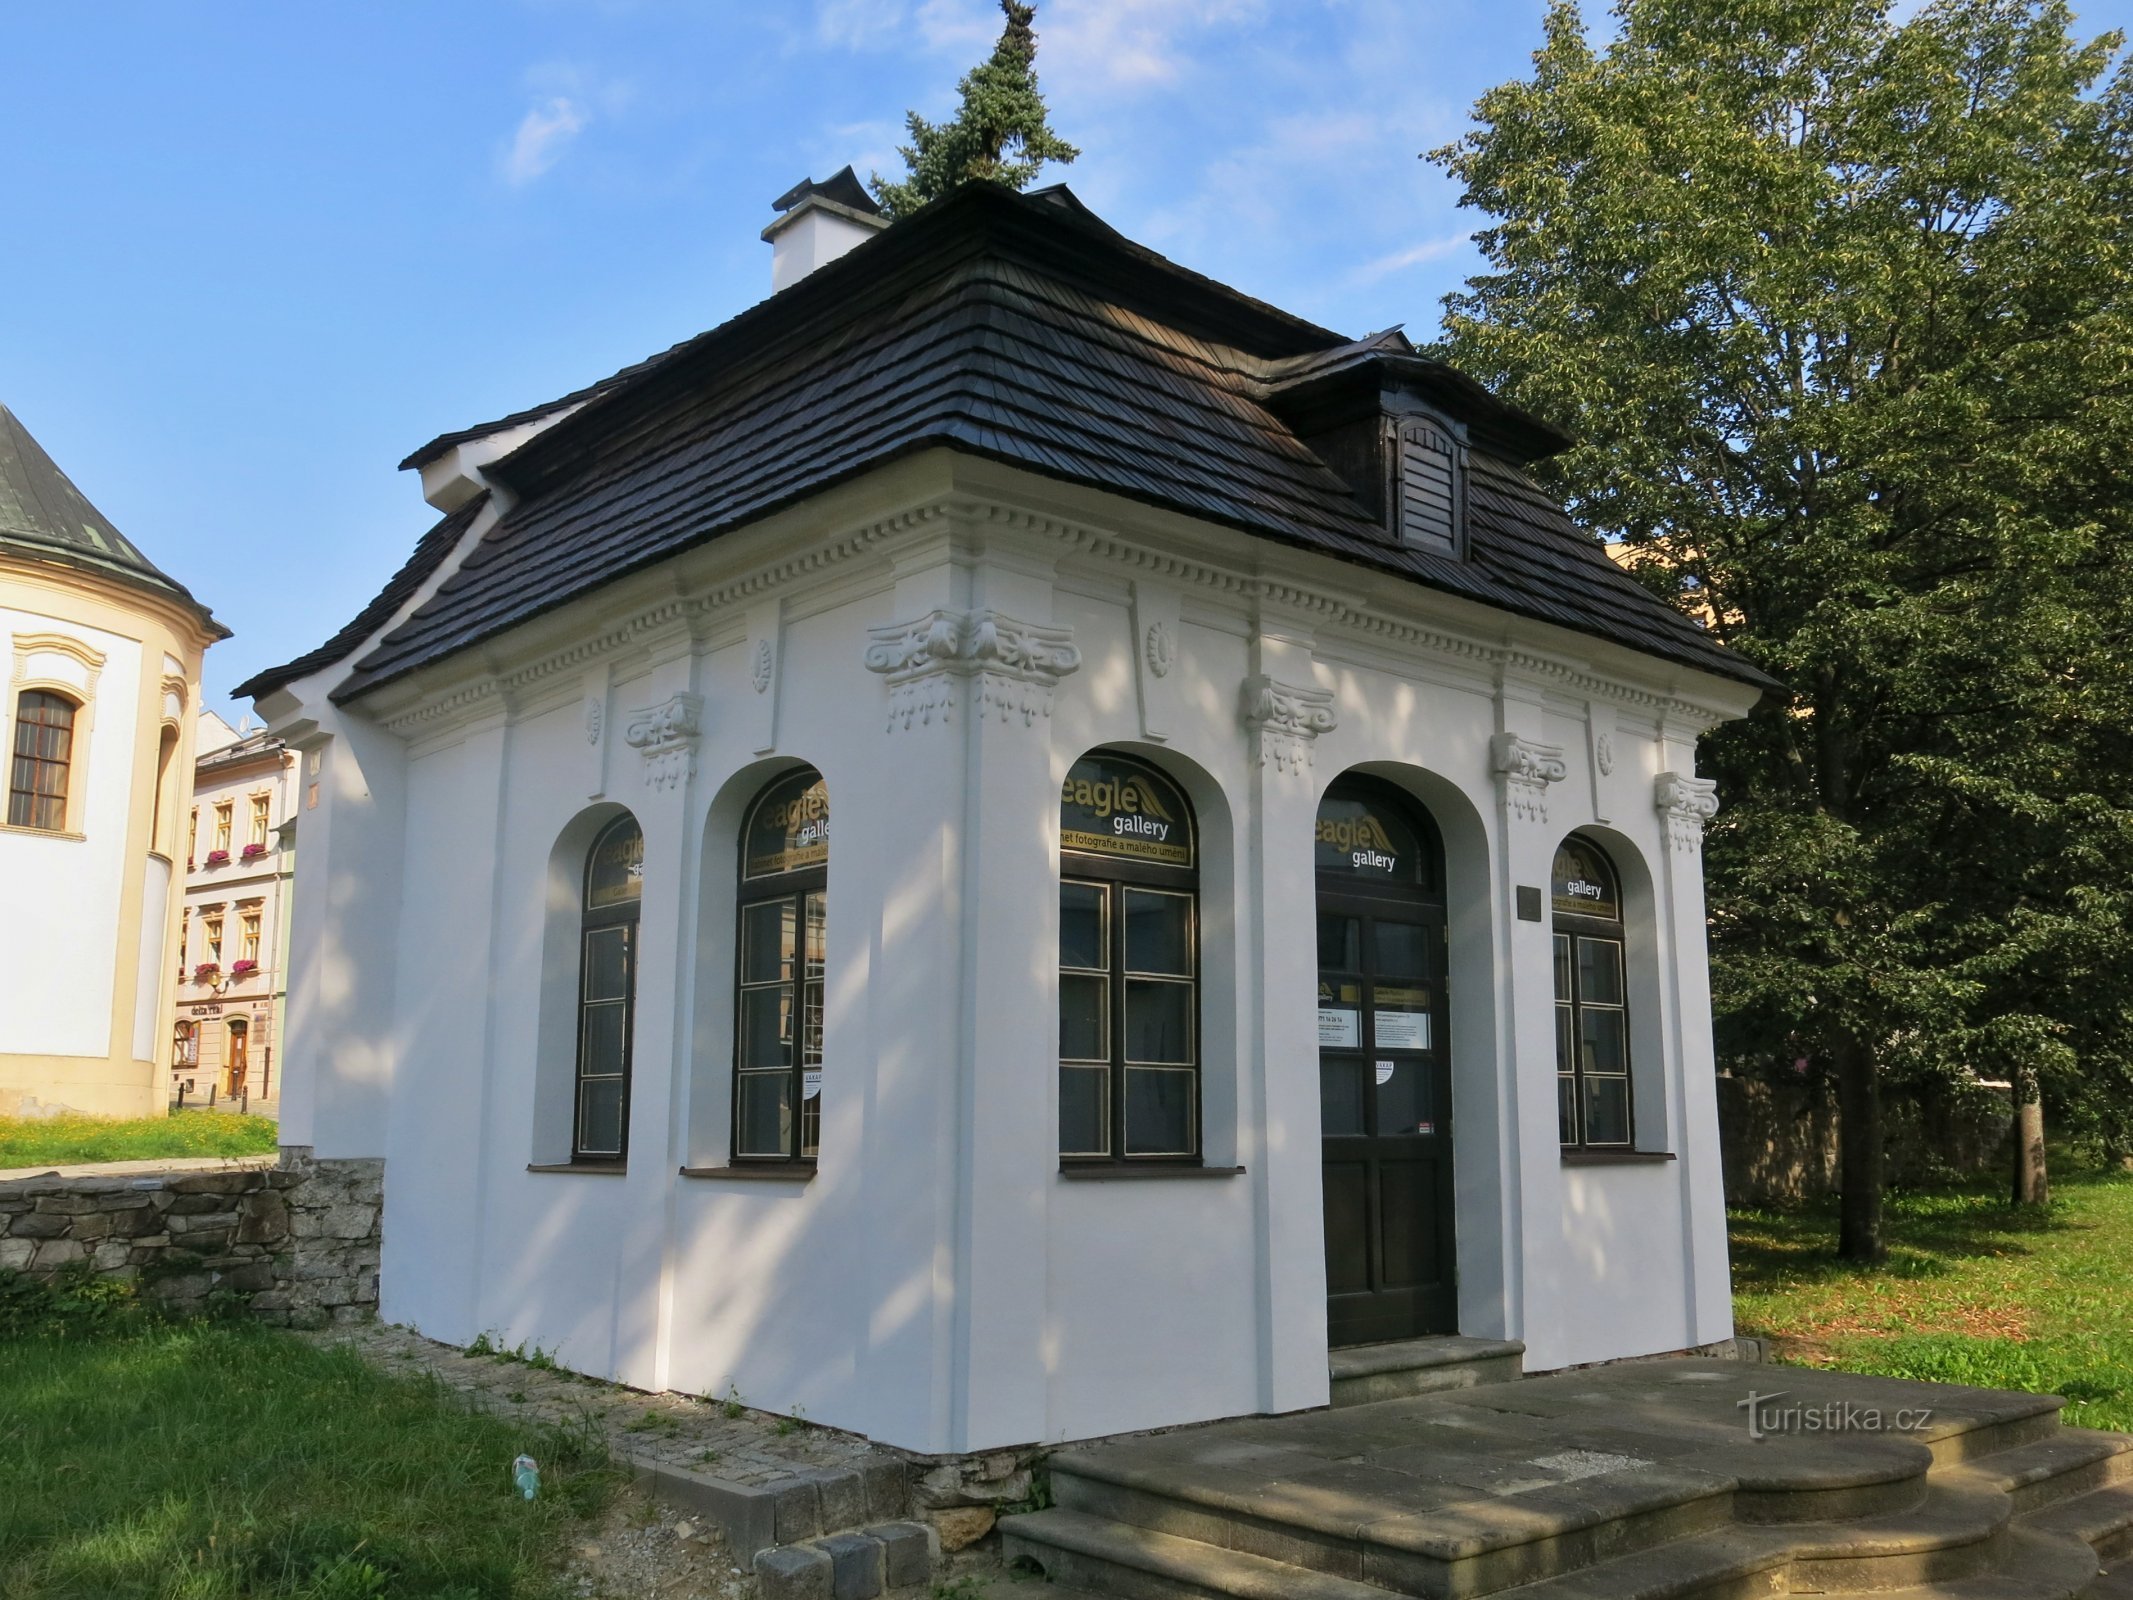 Šumperk – Galerie Pavilon, prva samopostrežna galerija na Češkem